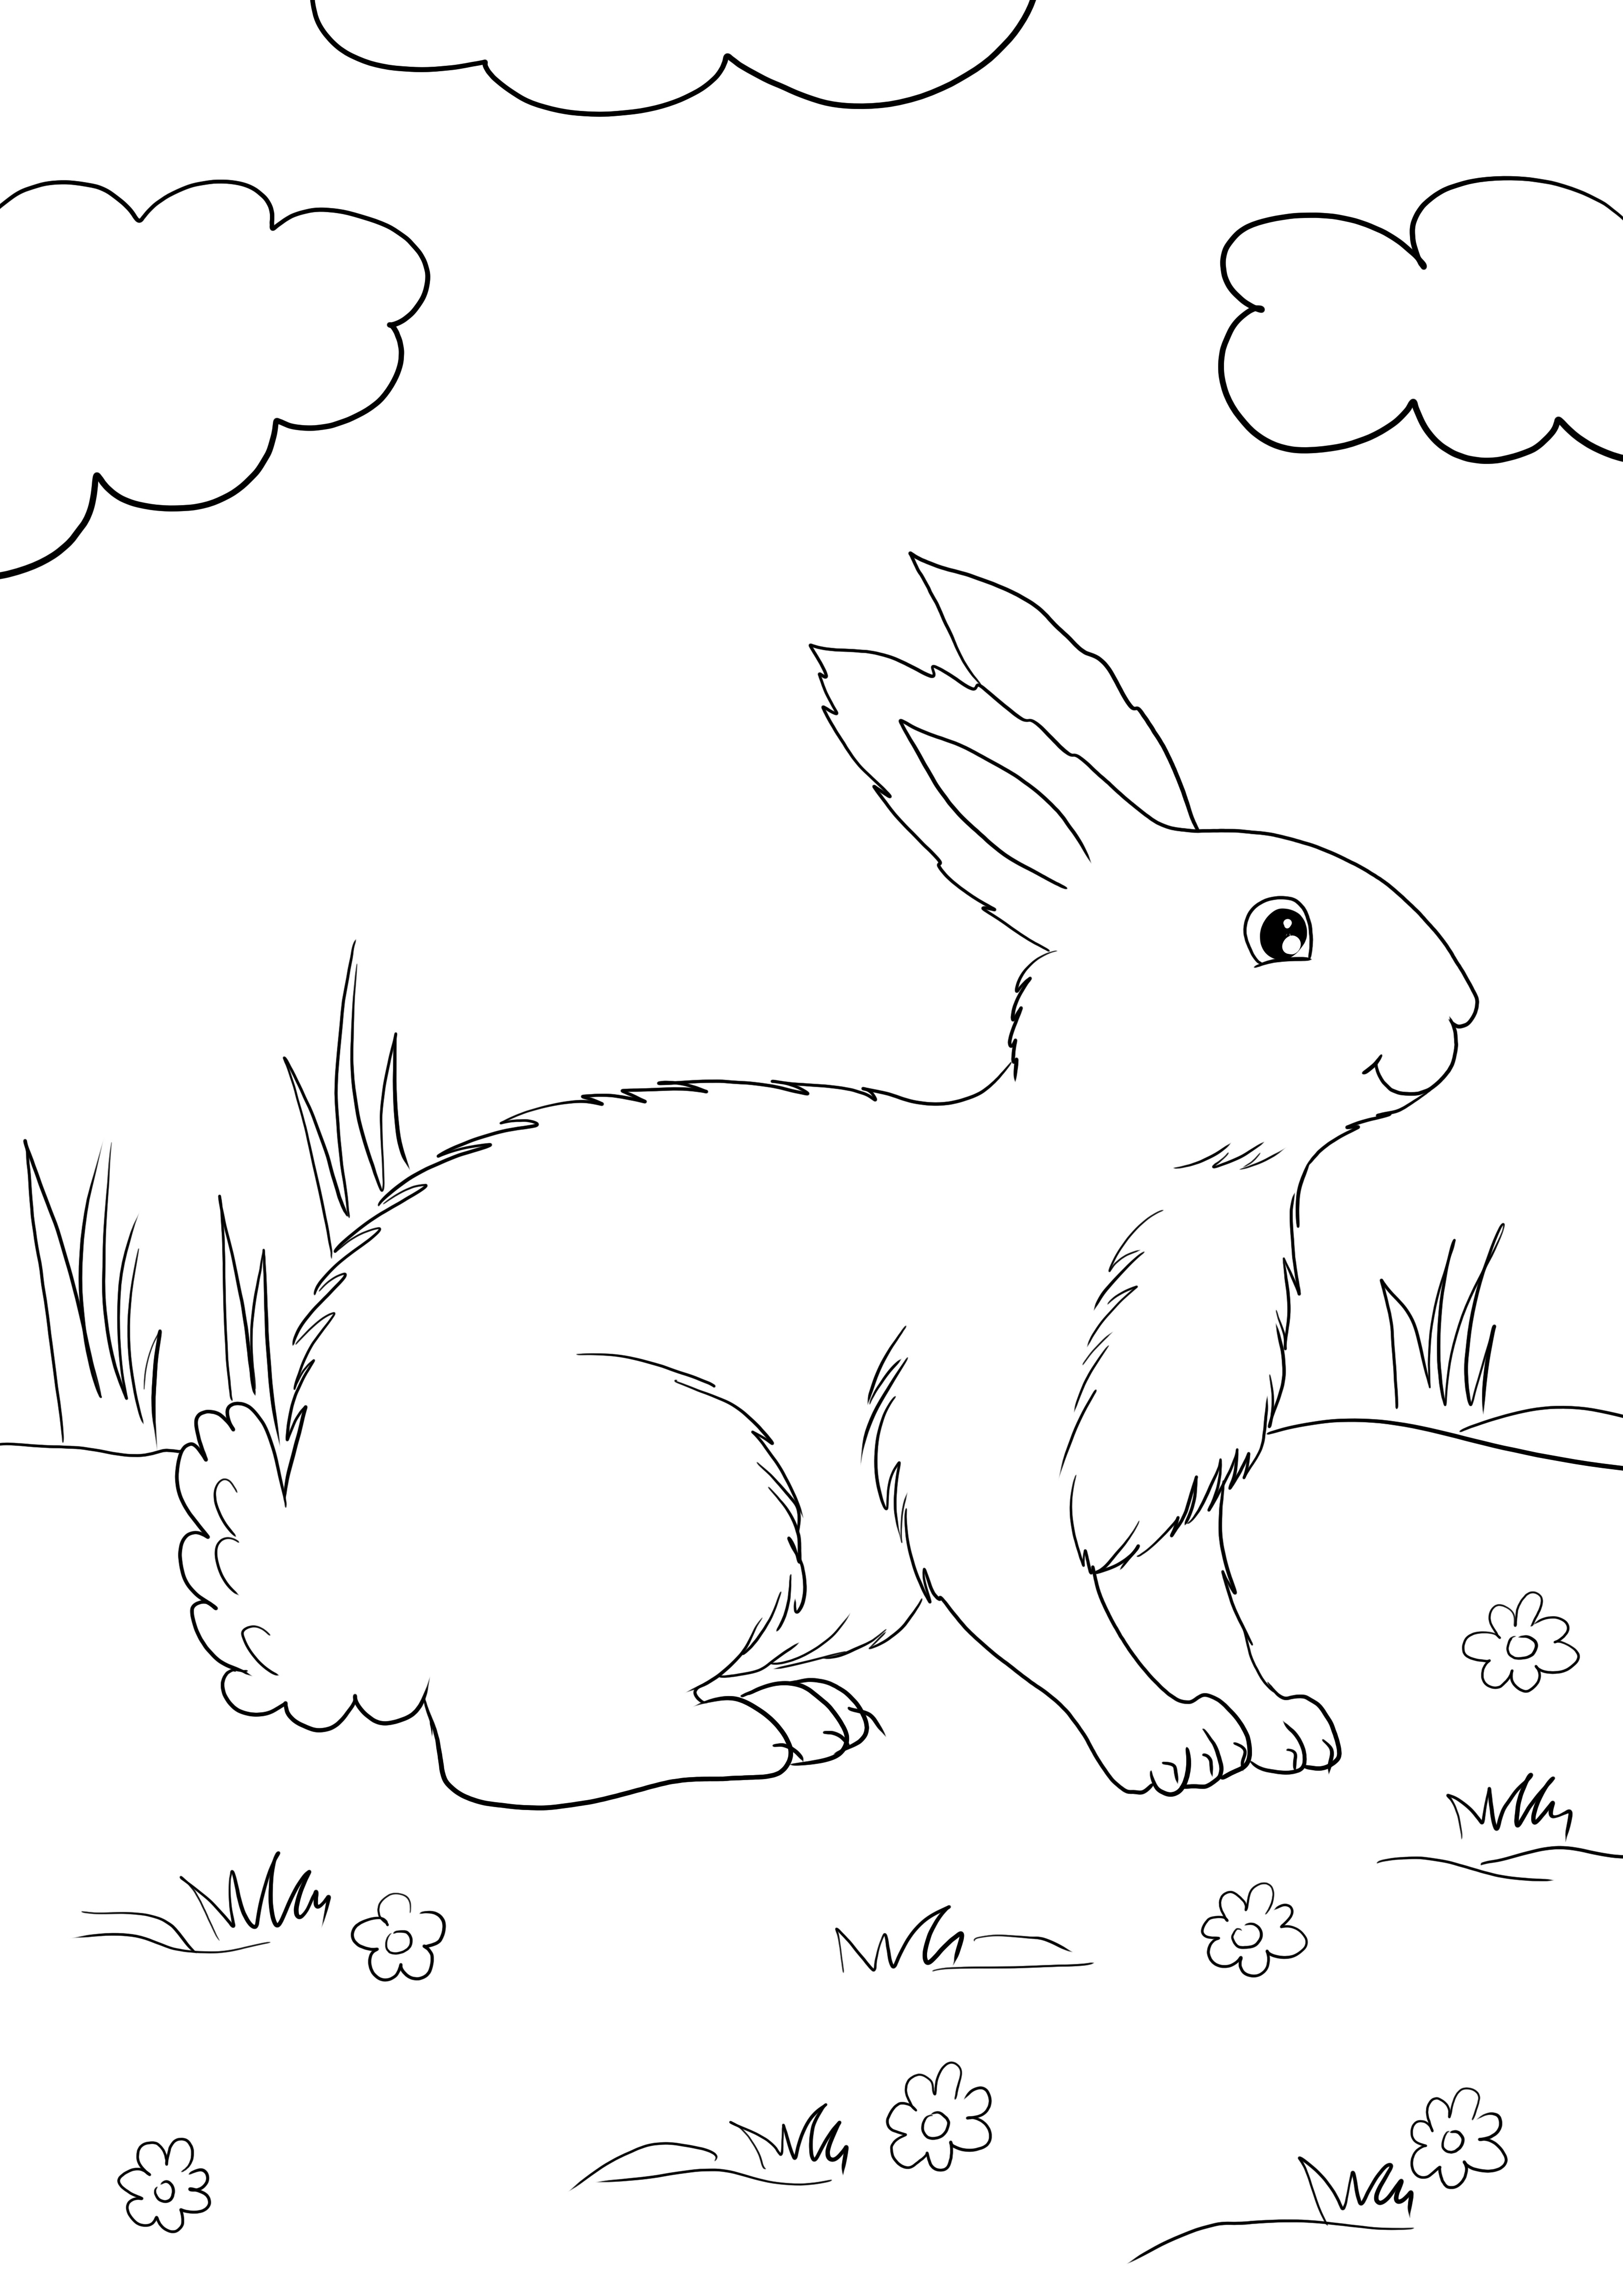 Simpatico omaggio di White Rabbit facile da stampare e colorare e imparare a conoscere i conigli